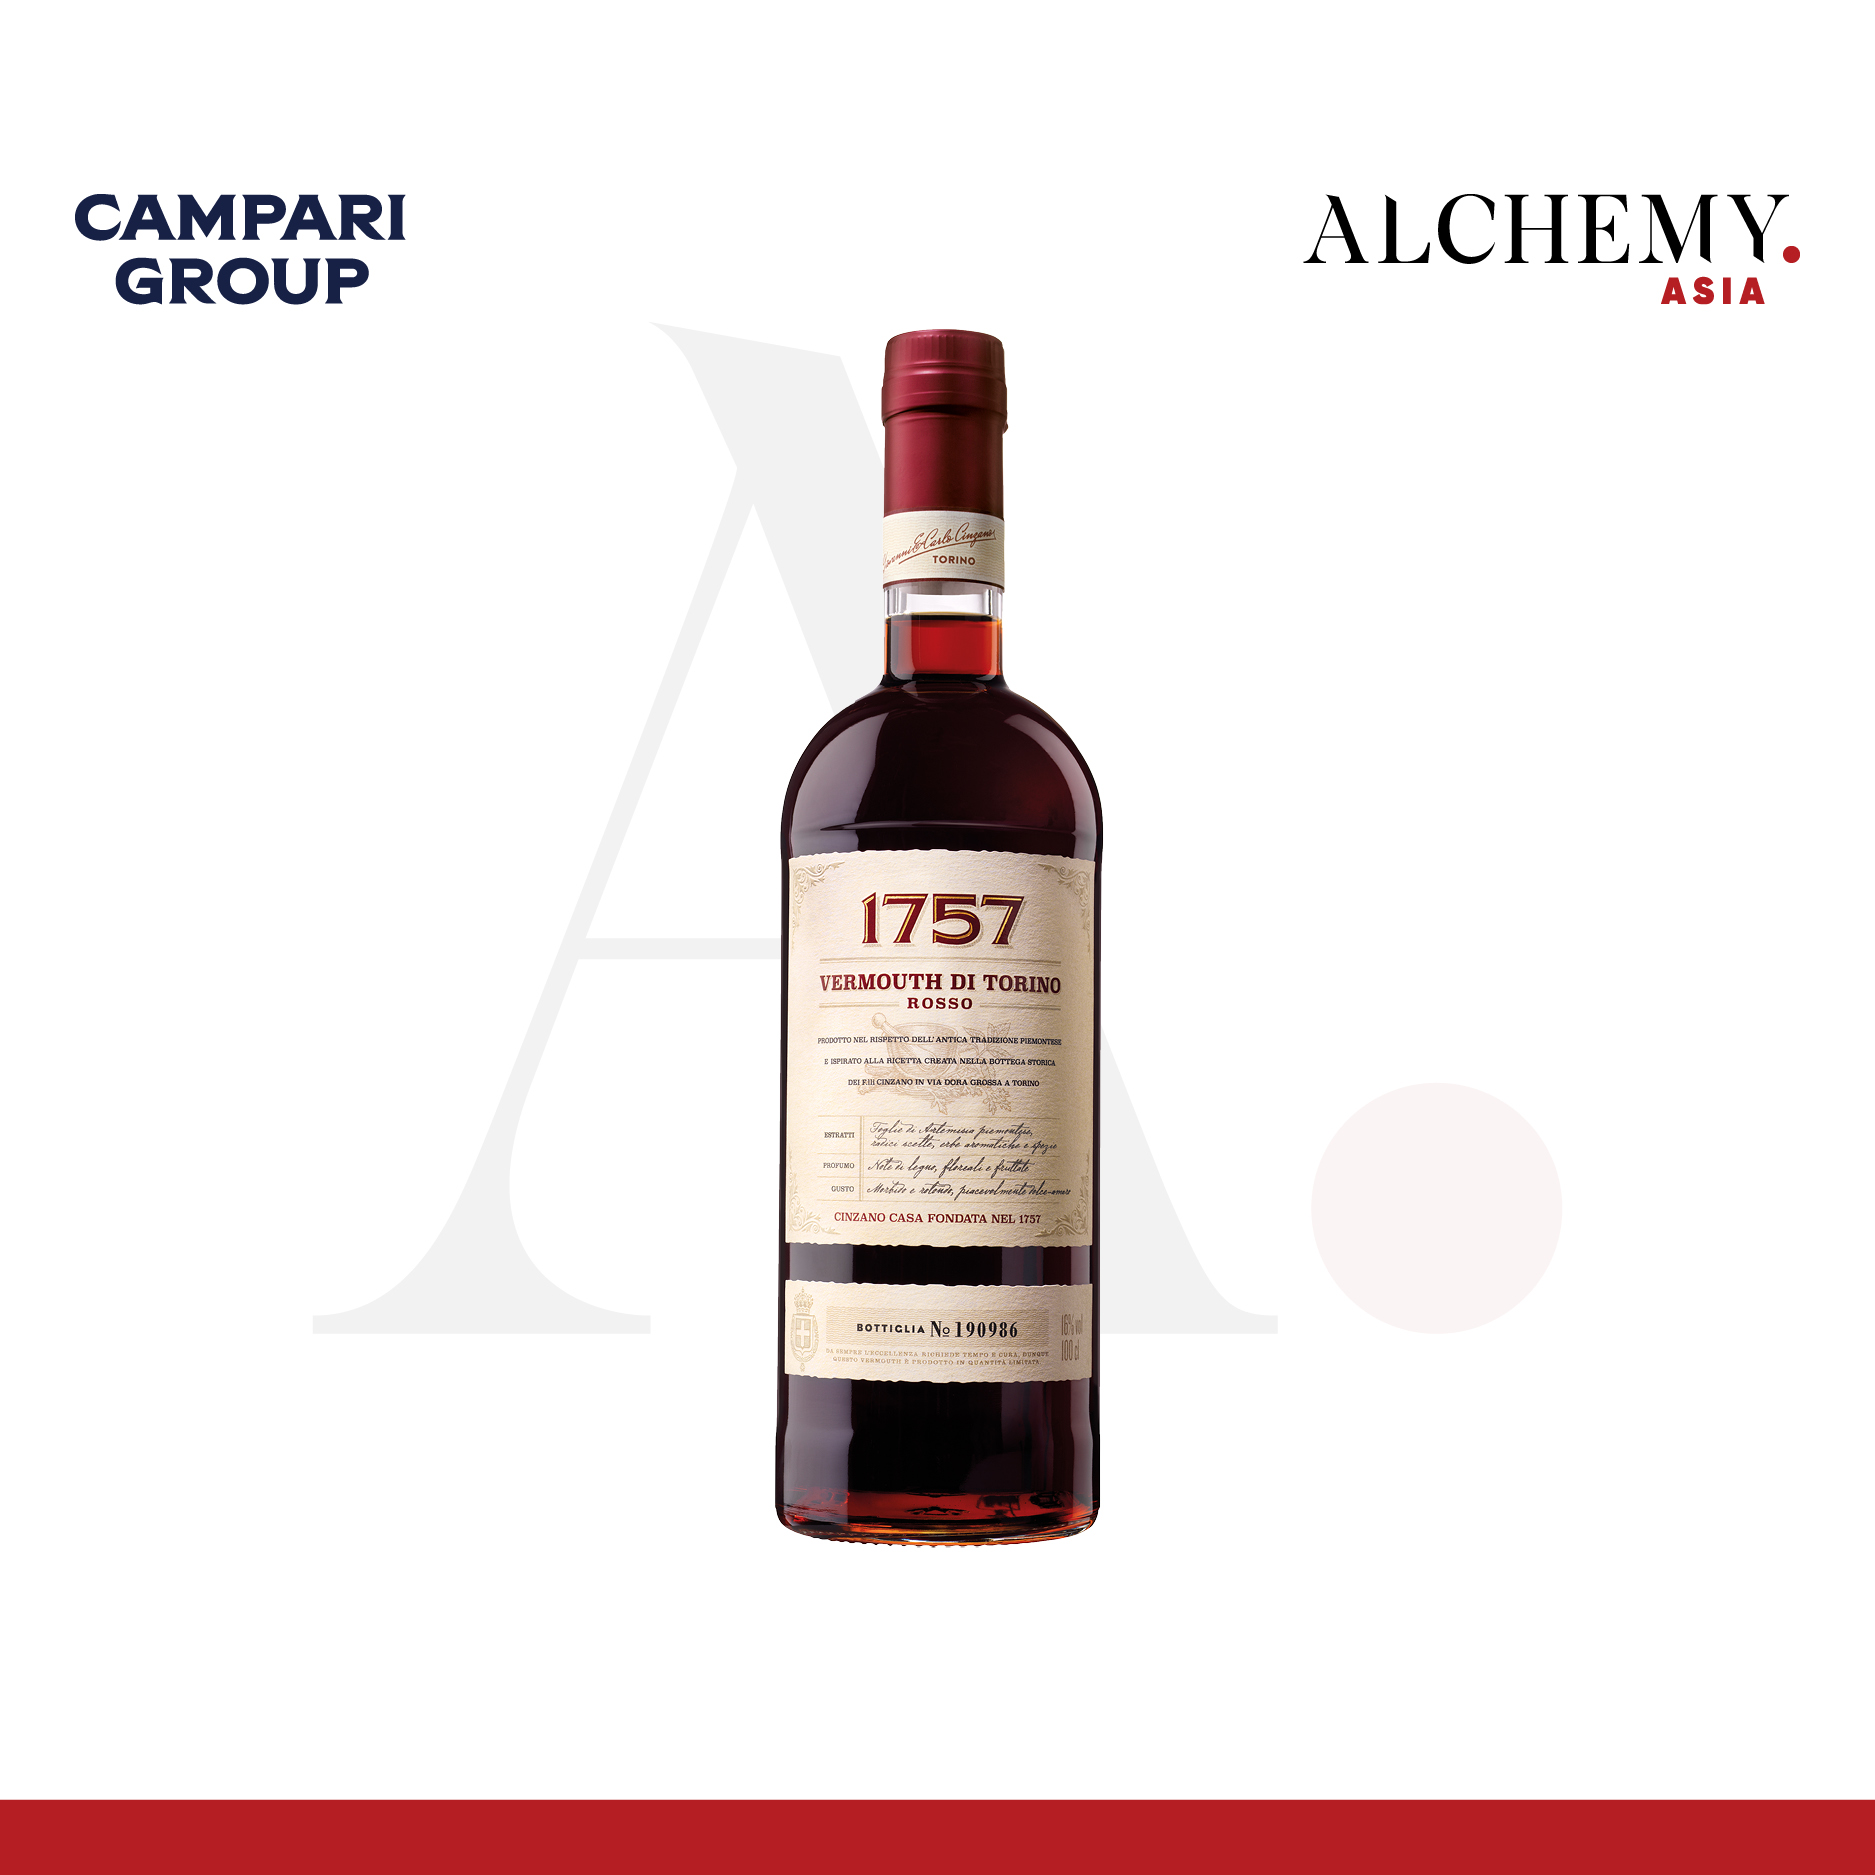 Rượu Cinzano Vermouth Rosso 1757 16% 1x1L